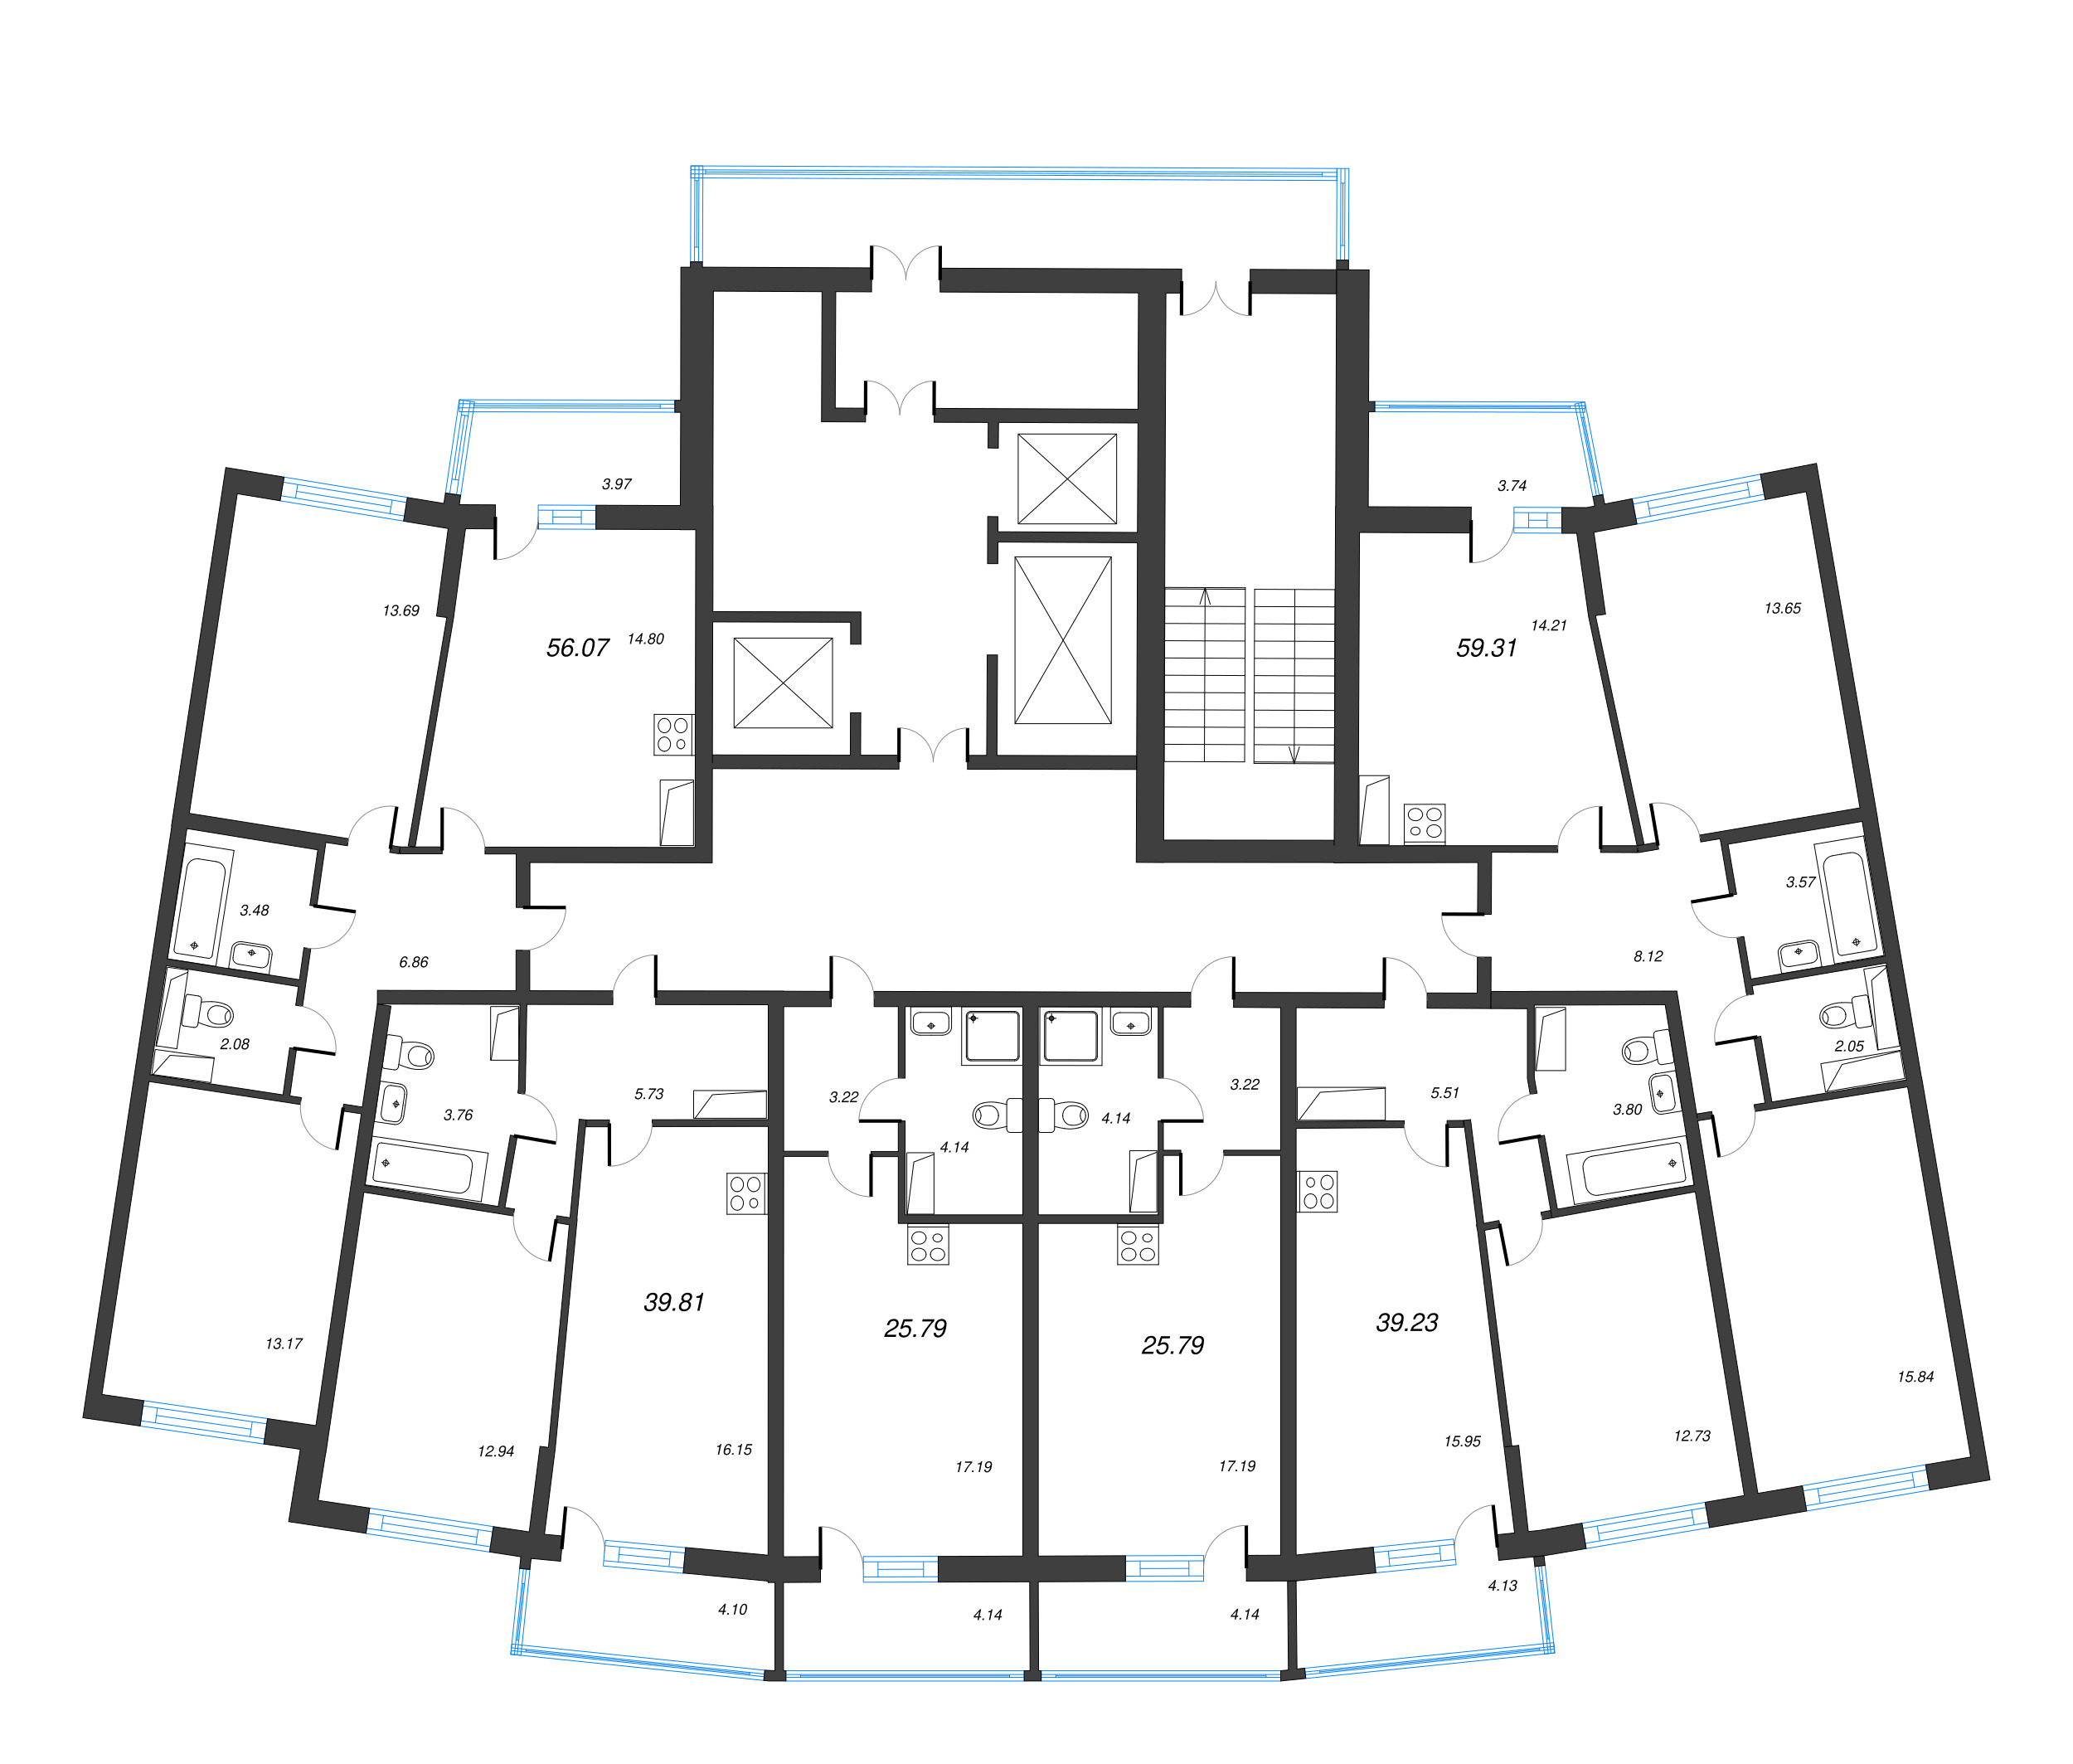 3-комнатная (Евро) квартира, 56.07 м² в ЖК "Дом Левитан" - планировка этажа